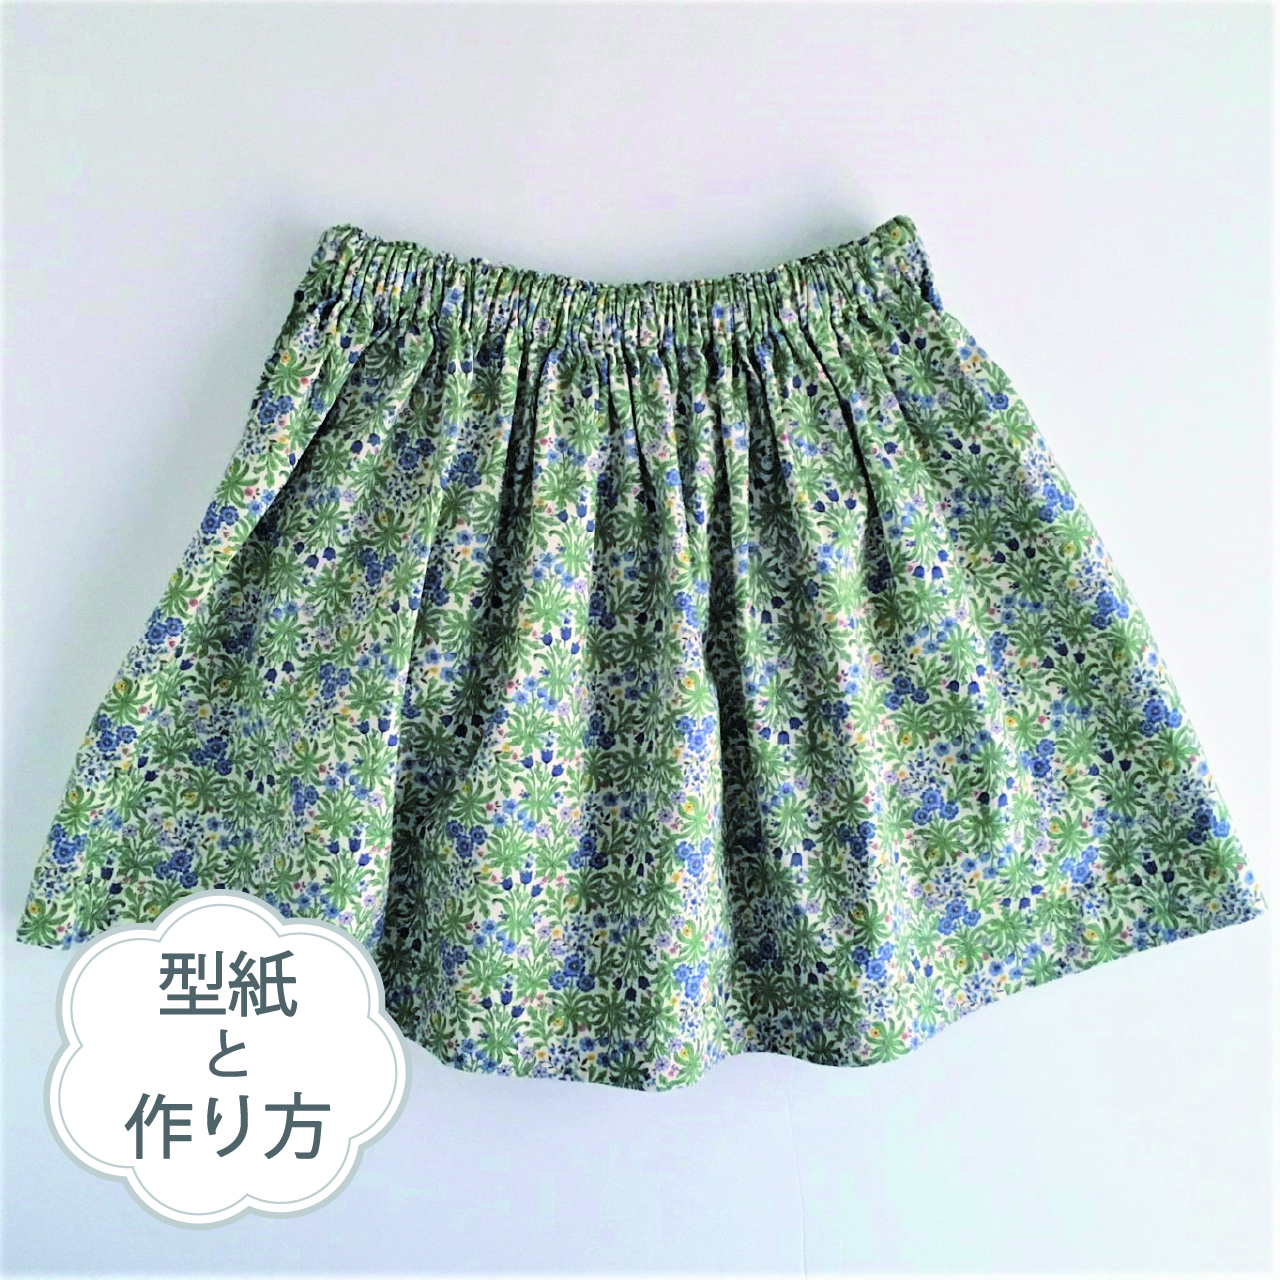 おうちスカート ギャザースカート 70 大人フリーサイズ 型紙と作り方のセット Bo 37 子供服の型紙ショップ Tsukuro ツクロ